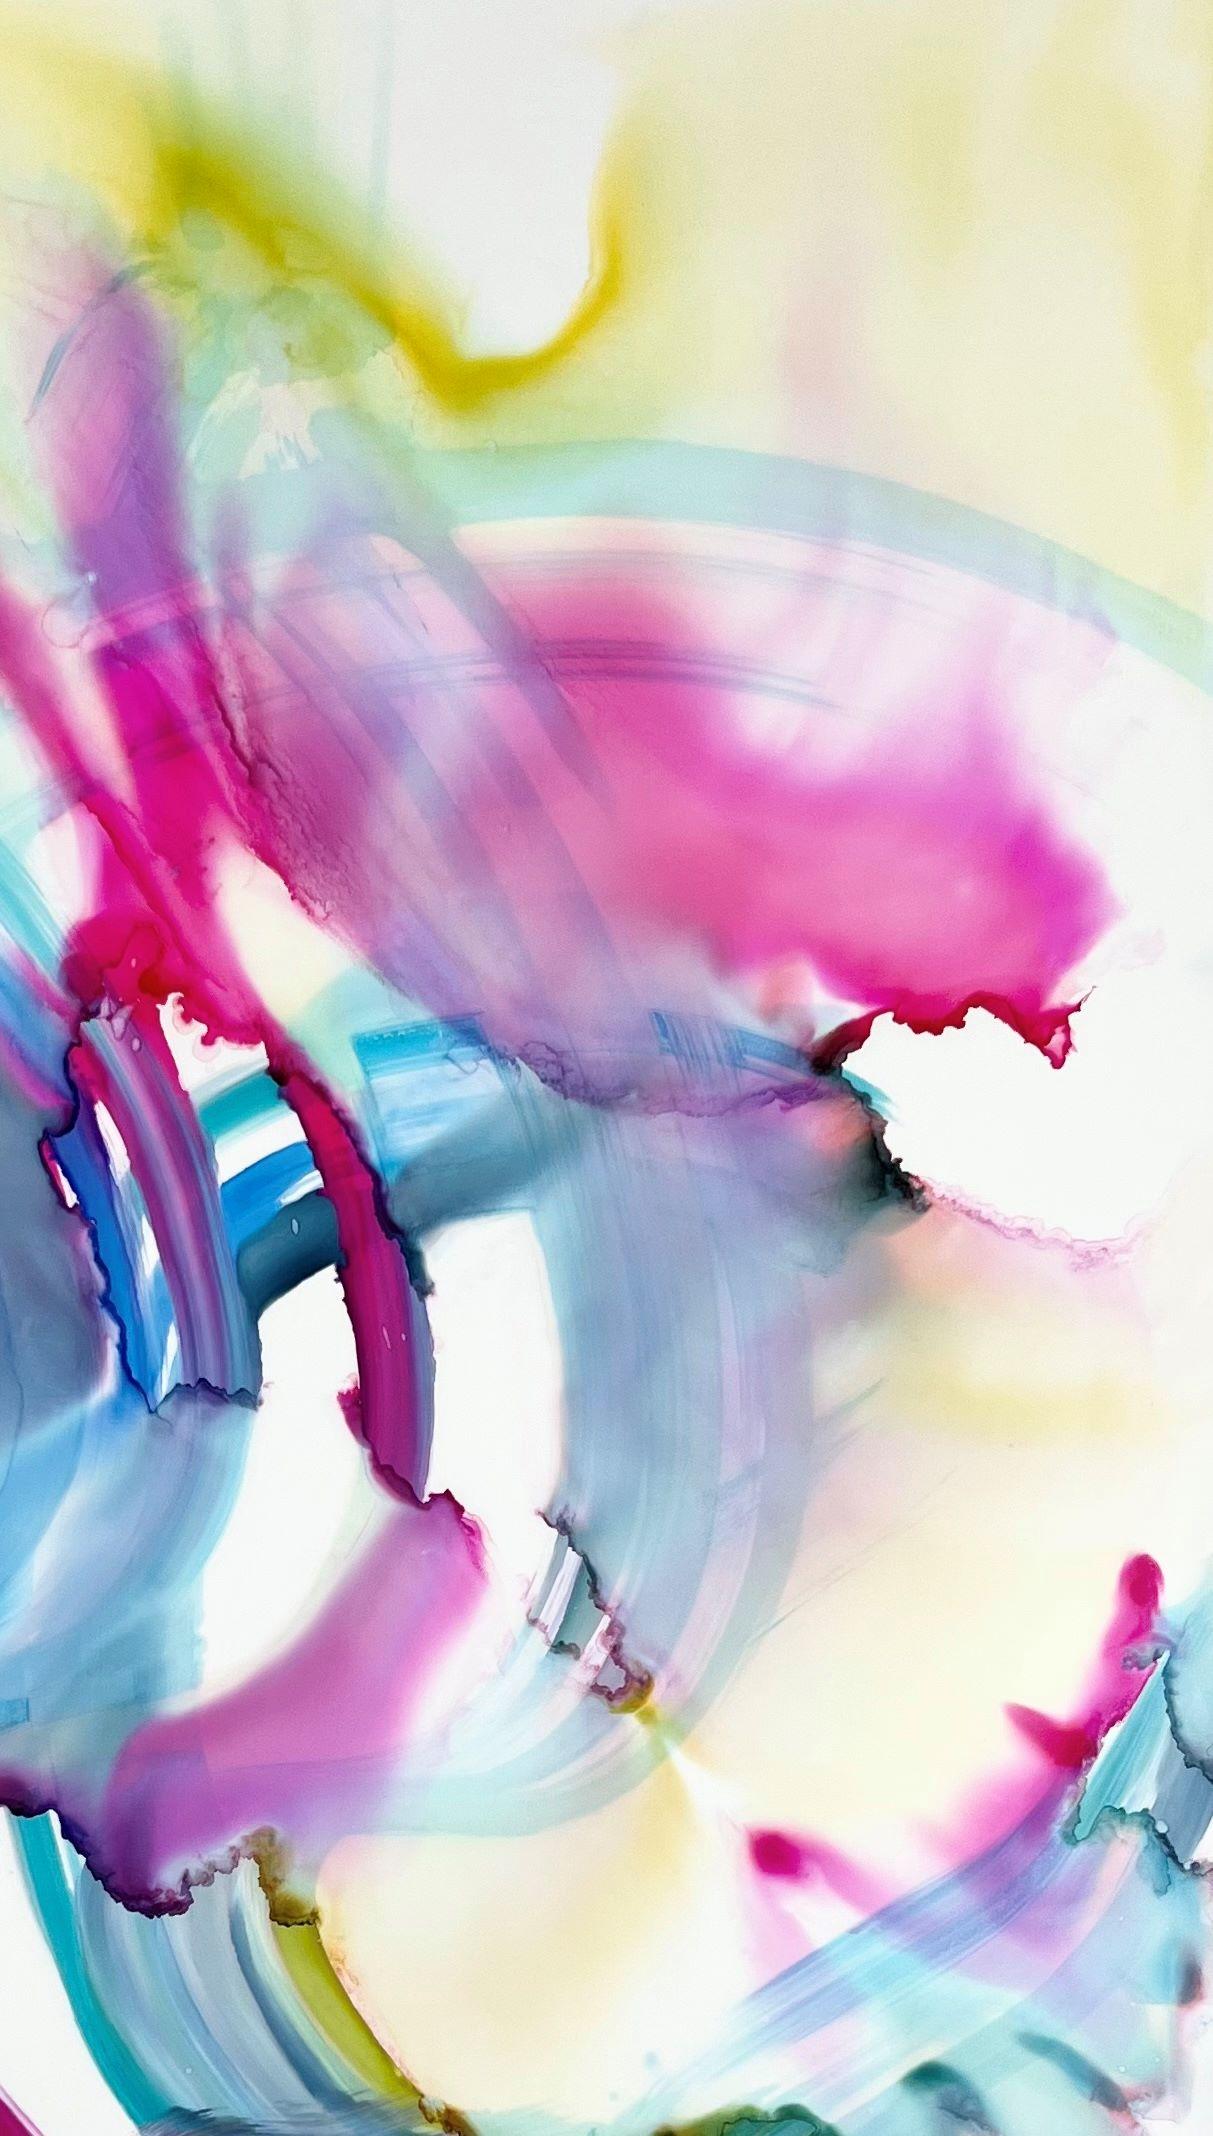 <p>Commentaires de l'artiste<br>L'artiste Eric Wilson présente une peinture ludique à l'encre à alcool sur du papier yupo transparent. Les couleurs s'entremêlent et s'écoulent avec un rythme parfait. Â